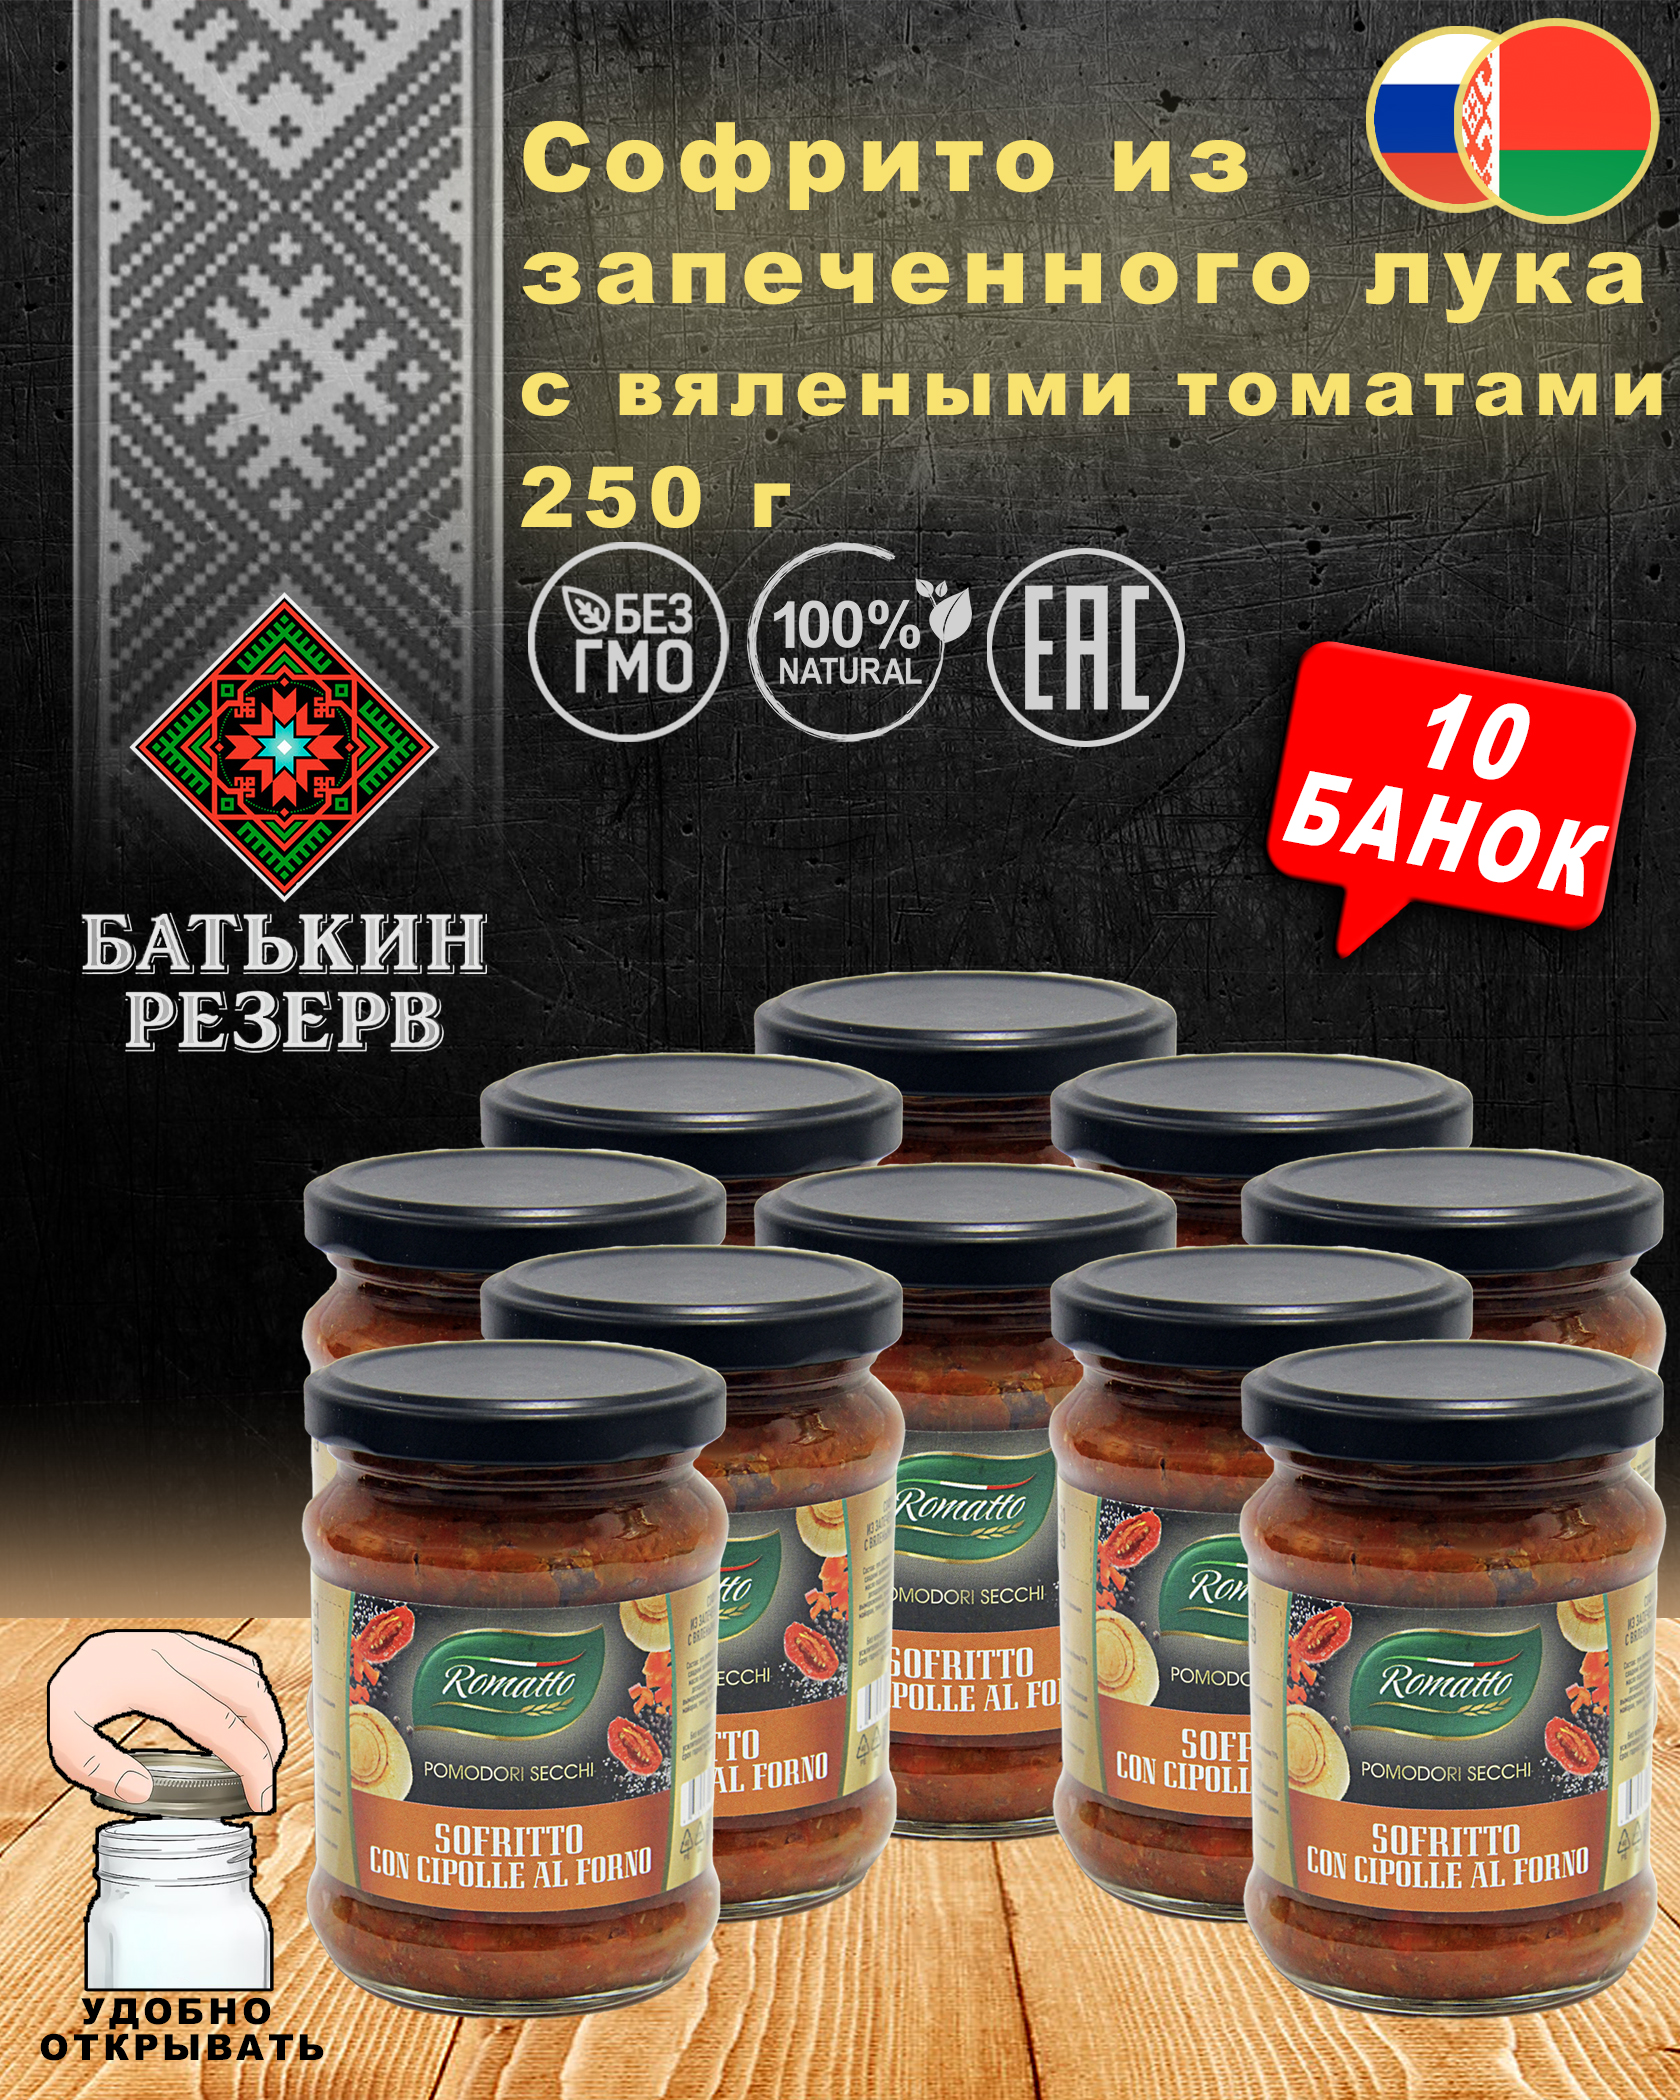 Софрито из запеченного лука с вялеными томатами, Romatto, ТУ, 10 шт. по 250 г